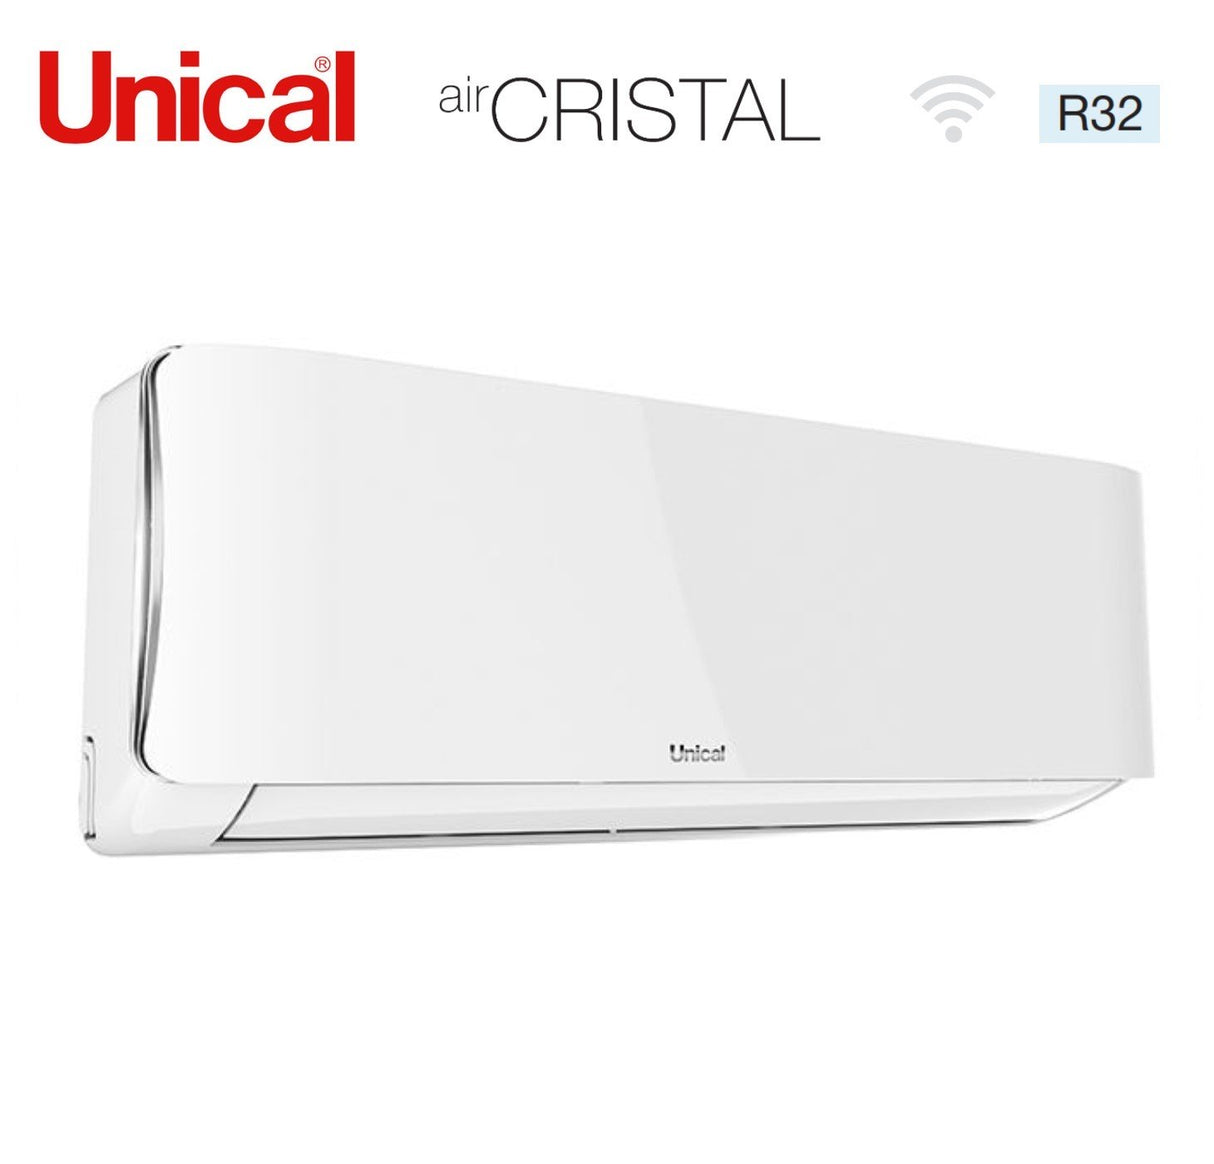 immagine-3-unical-climatizzatore-condizionatore-unical-quadri-split-inverter-serie-air-cristal-10101318-con-kmx4-36he-r-32-wi-fi-optional-10000100001300018000